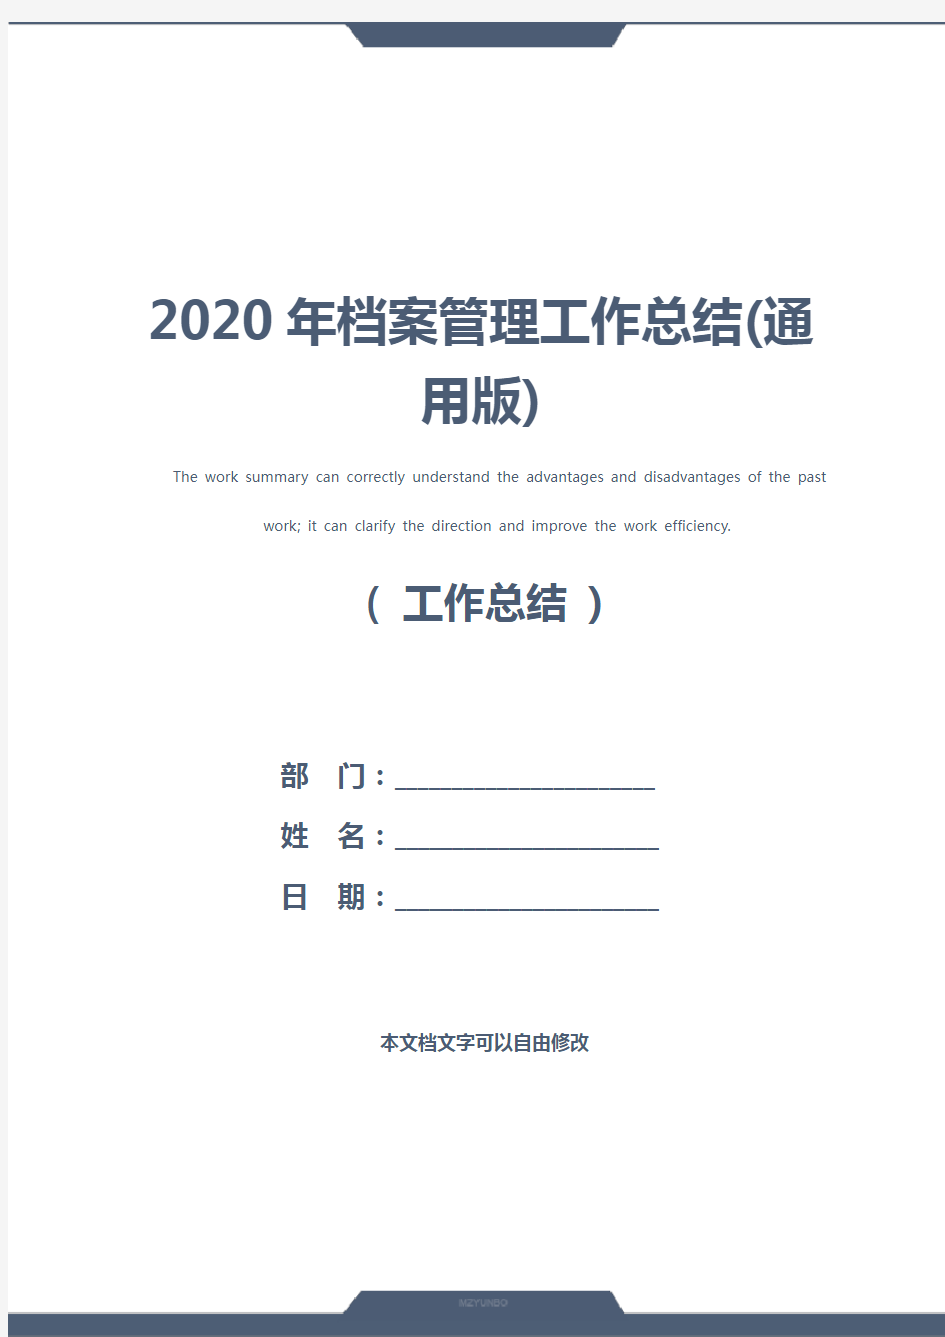 2020年档案管理工作总结(通用版)